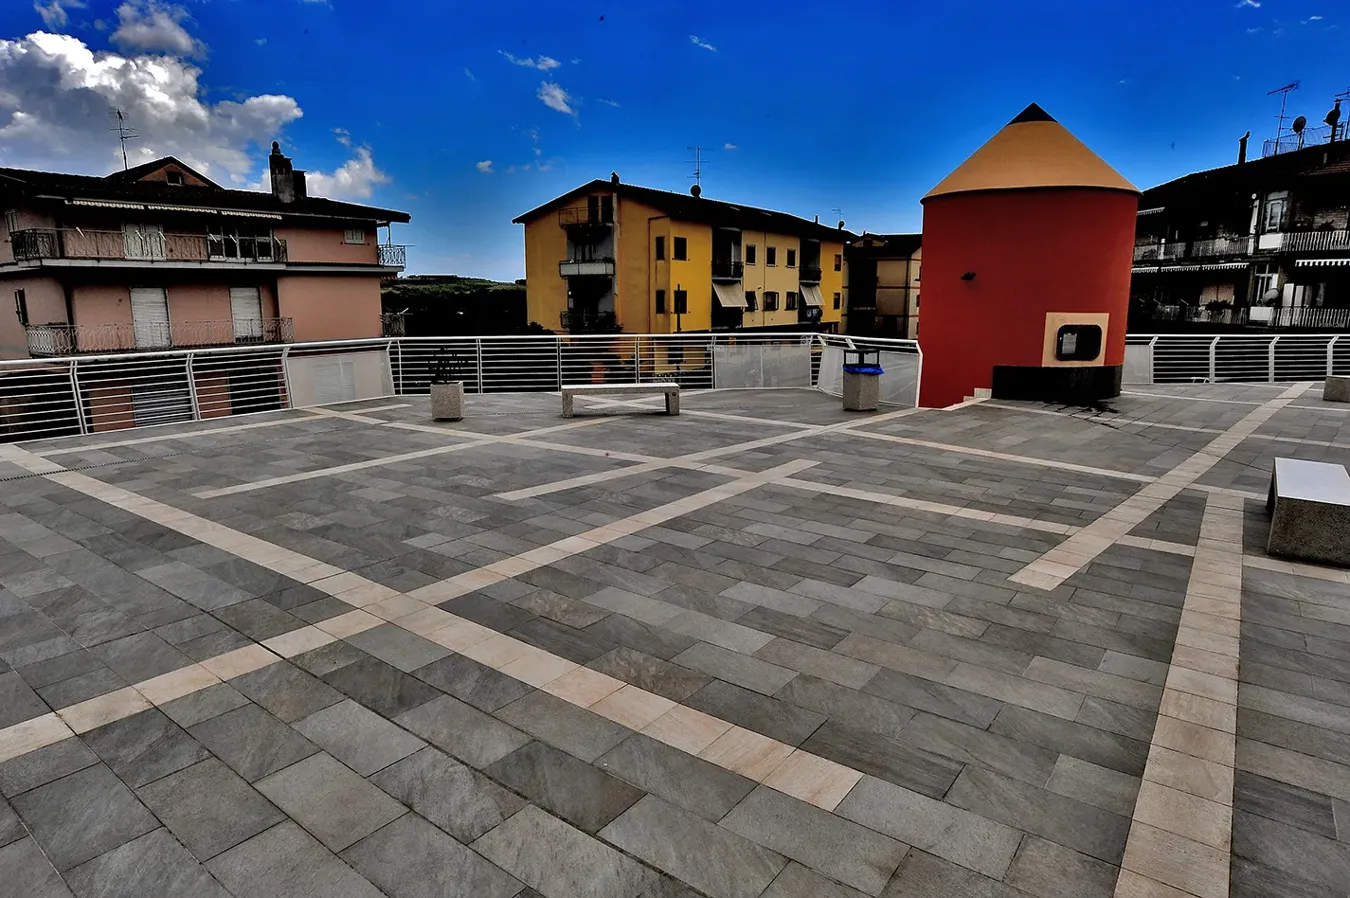 Piazza Campigliano renovada con varios formatos de baldosas de la colección Point, mostrando un diseño atractivo y moderno que realza el espacio urbano circundante.